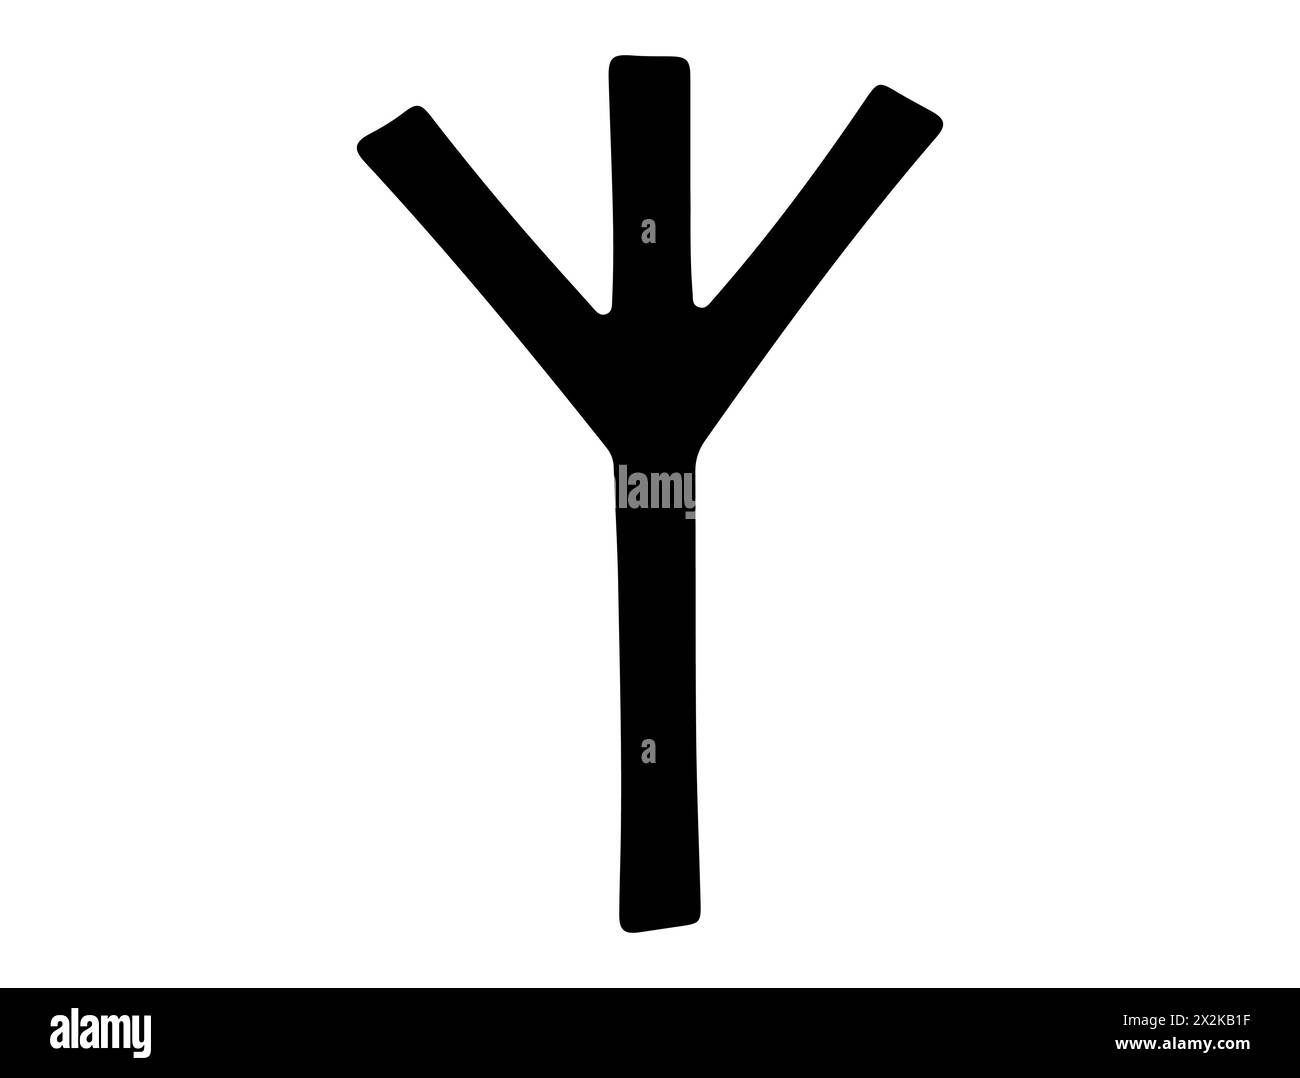 Viking rune alphabet silhouette vector art Stock Vector